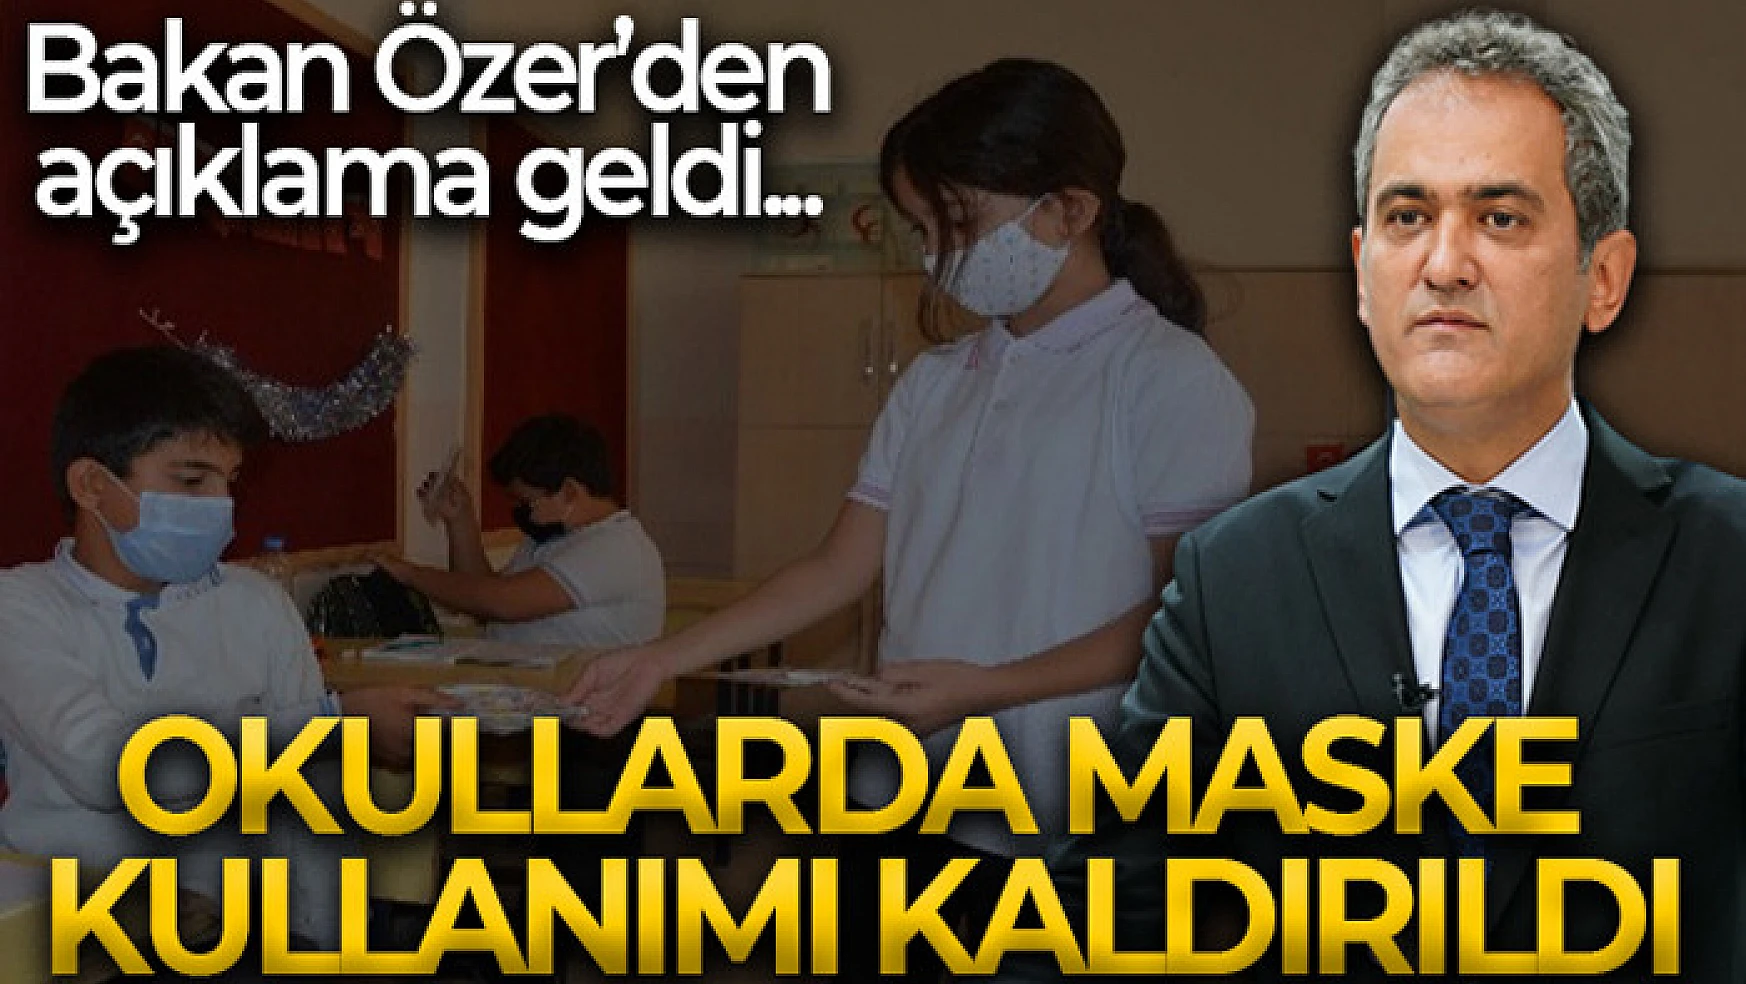 Milli Eğitim Bakanı Özer: 'Yarından itibaren okullarda maske kullanımını kaldırmış bulunuyoruz'